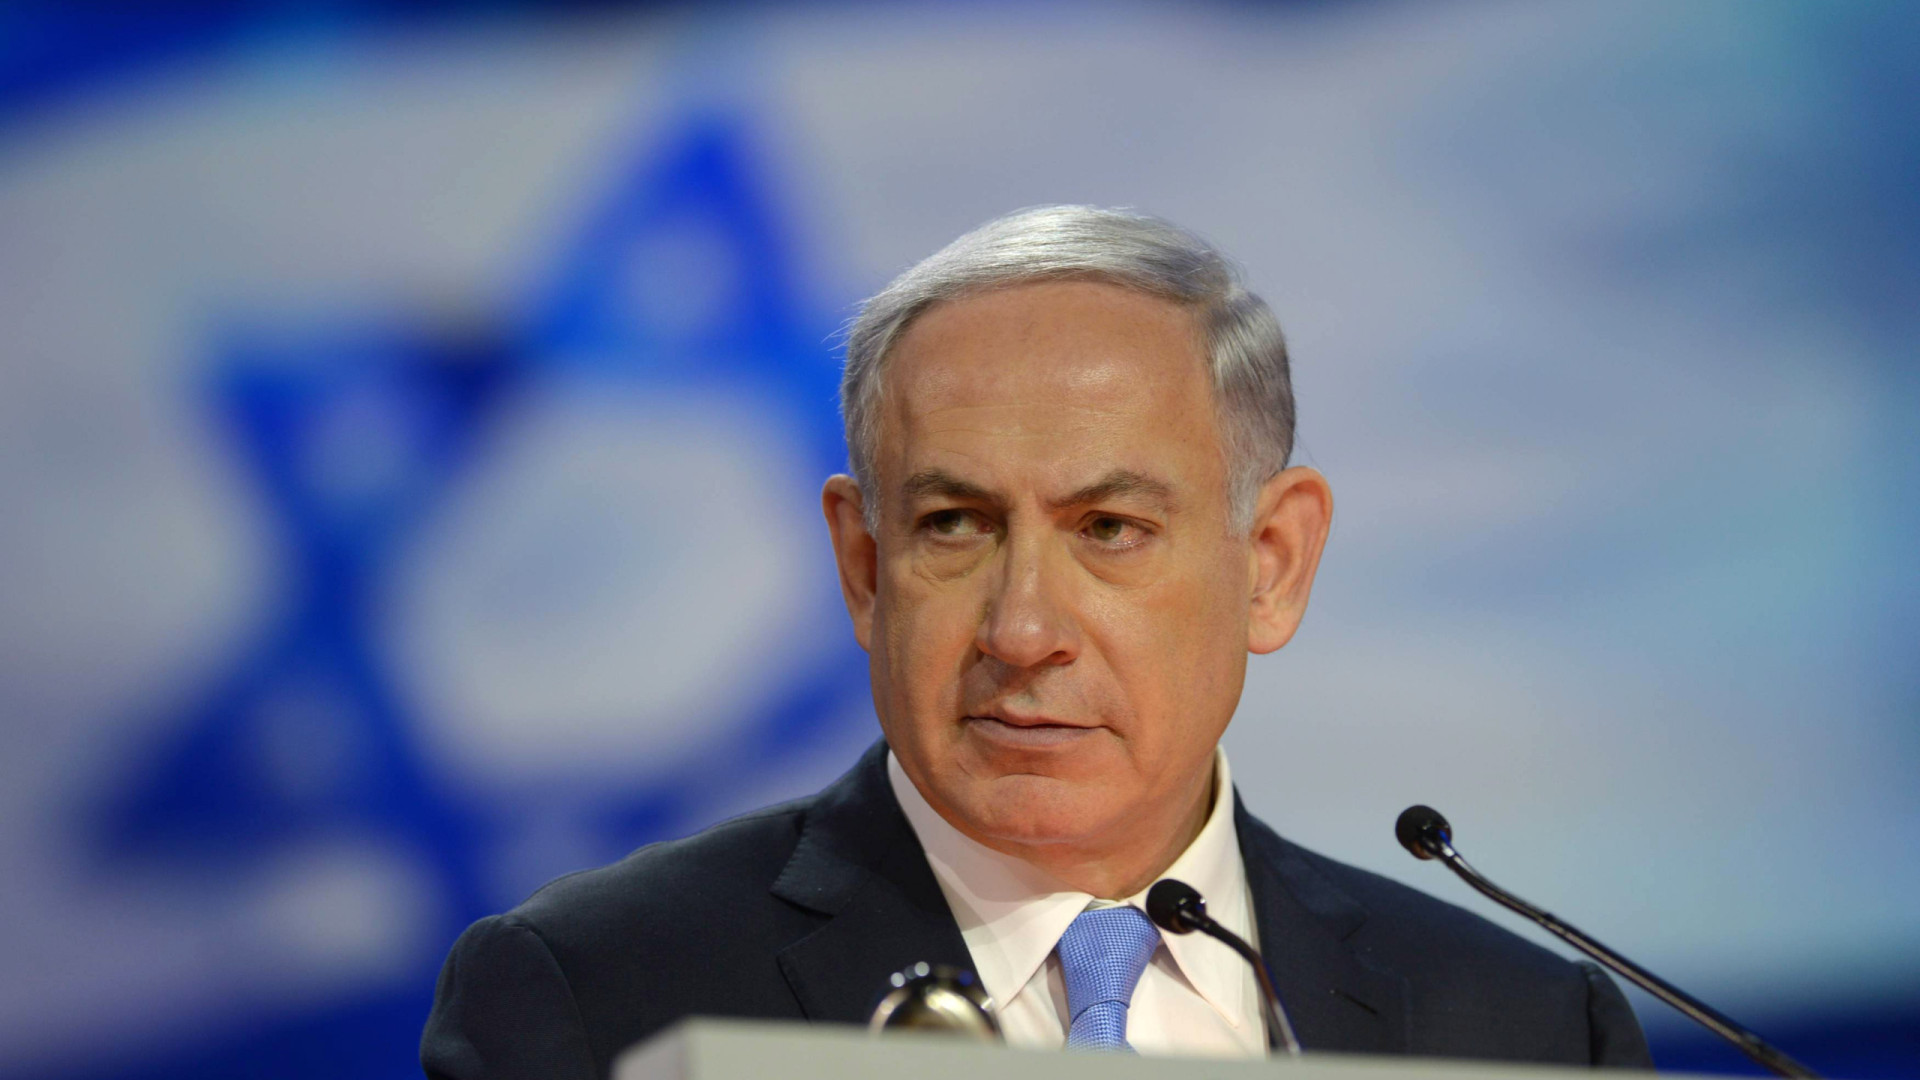 Netanyahu diz que 'fortes indicações' sobre reféns motivaram invasão ao maior hospital de Gaza